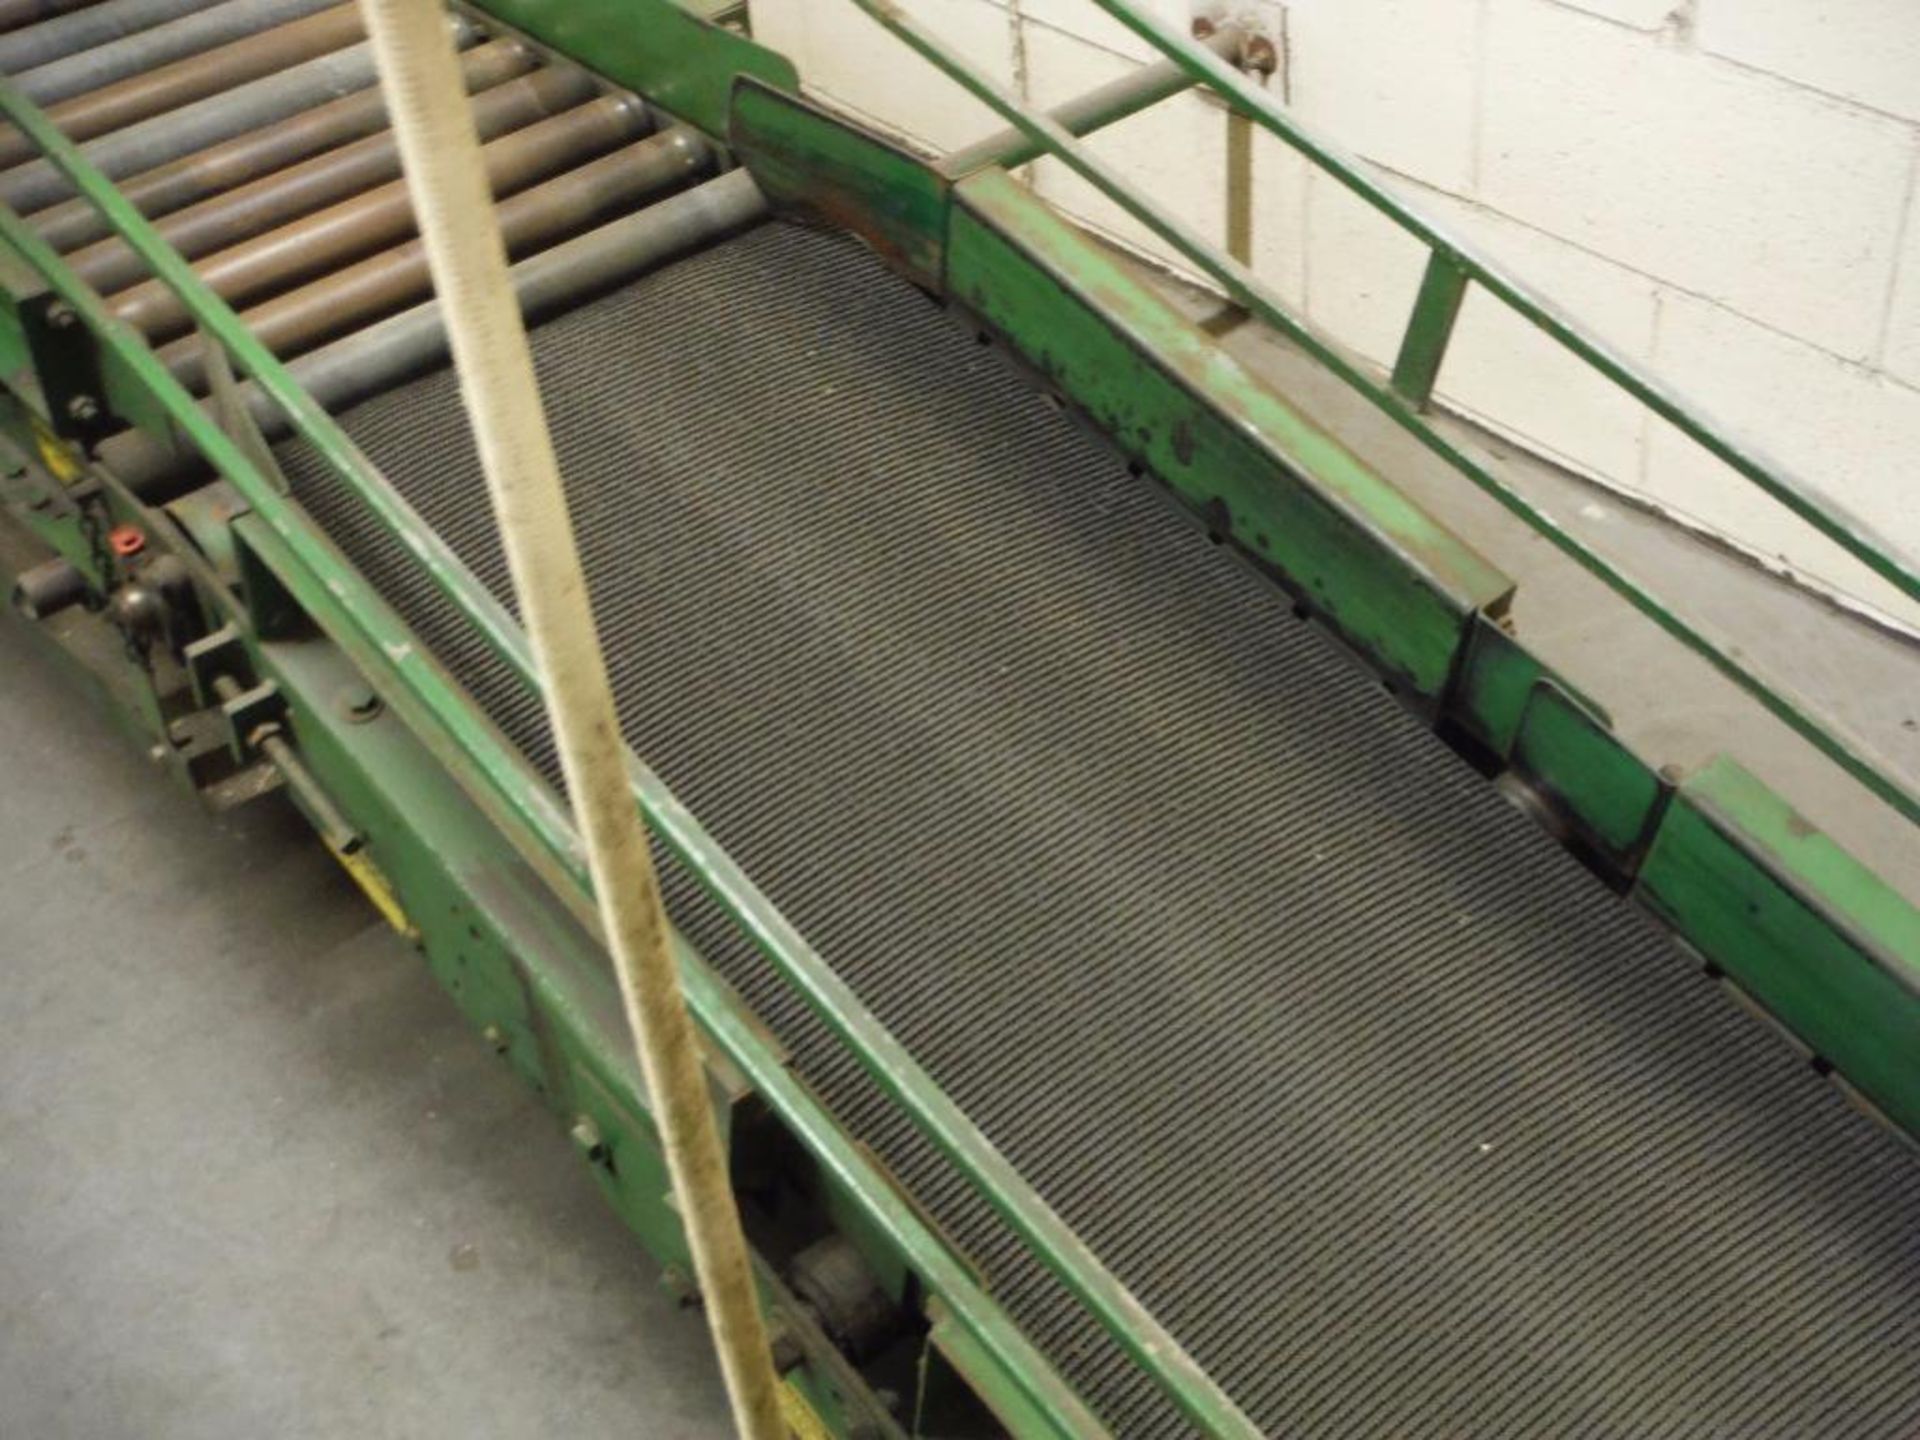 Uniflo overhead rubber belt conveyor, 36 ft. long x 18 in. wide, motor and drive, mild steel - Image 4 of 4